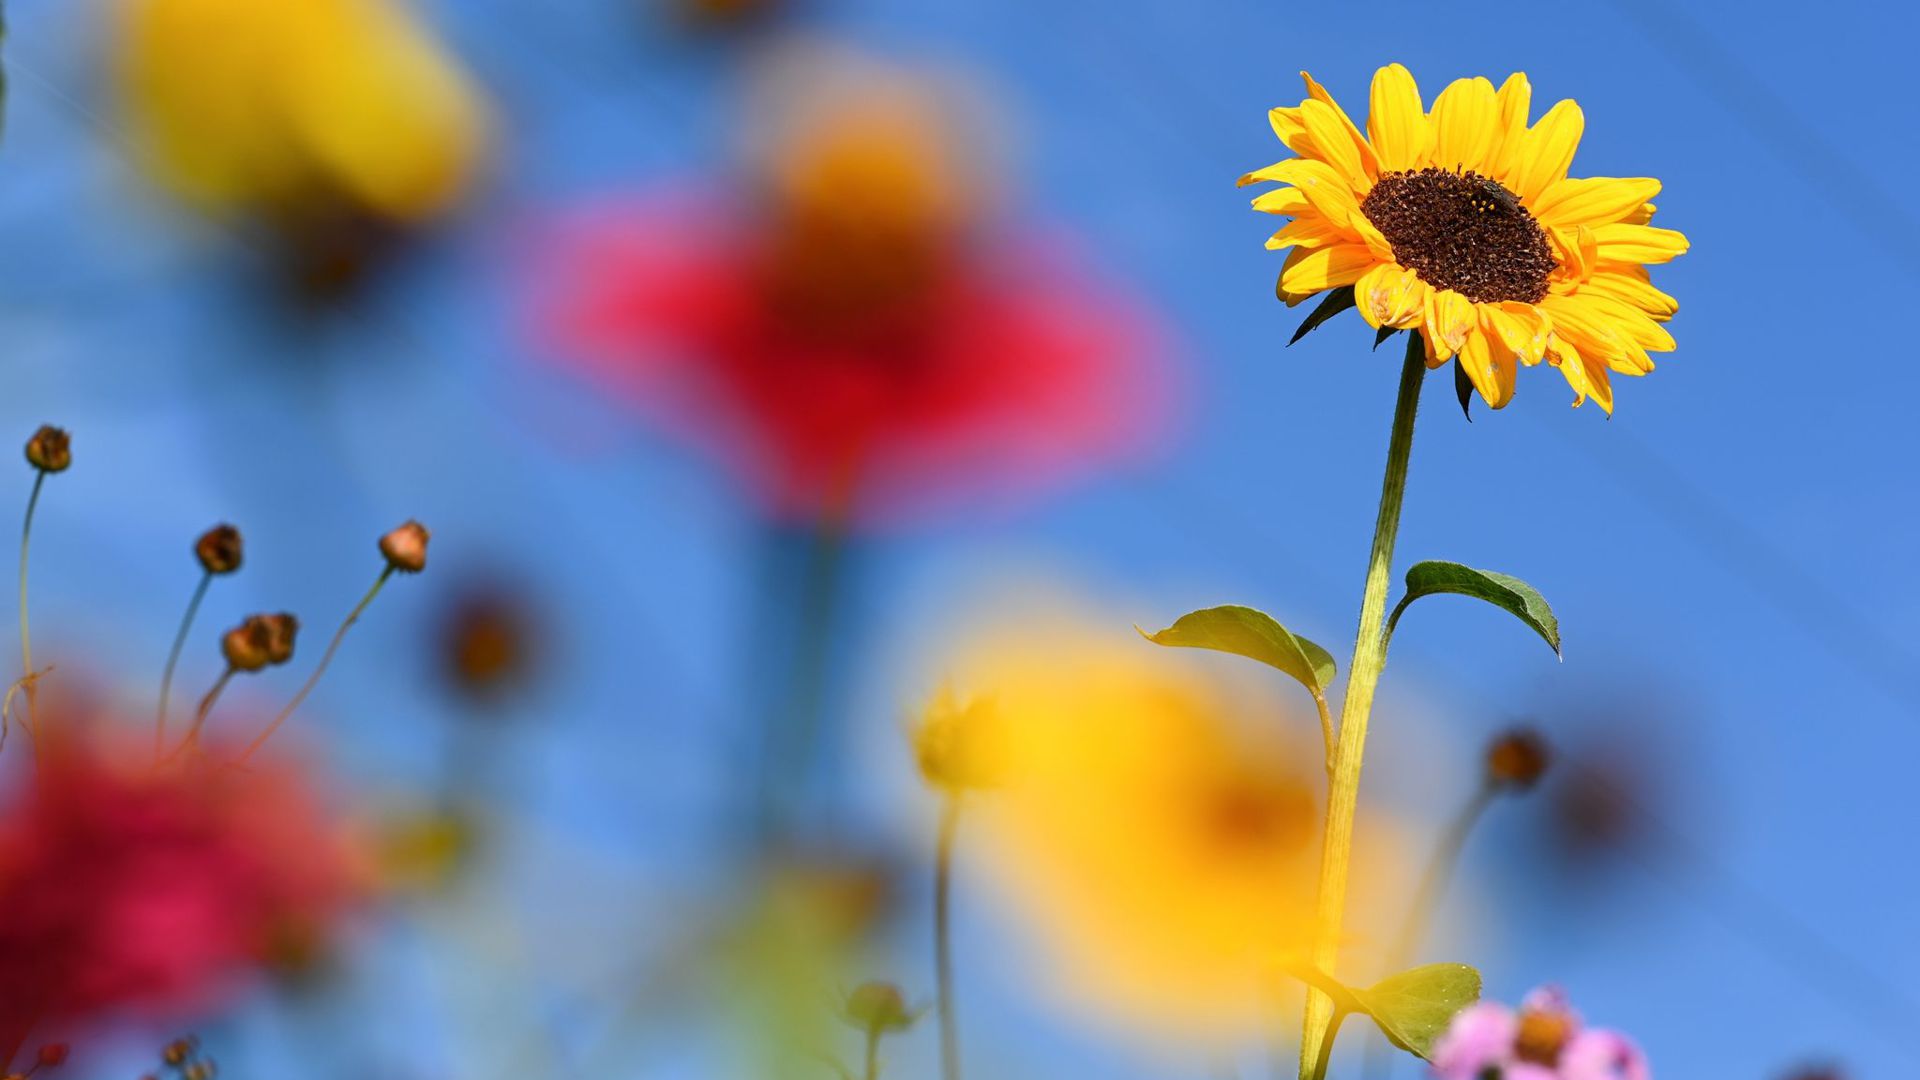 Eine Sonnenblume steht auf einer Blumenwiese zwischen mehreren anderen blühenden Blumen.